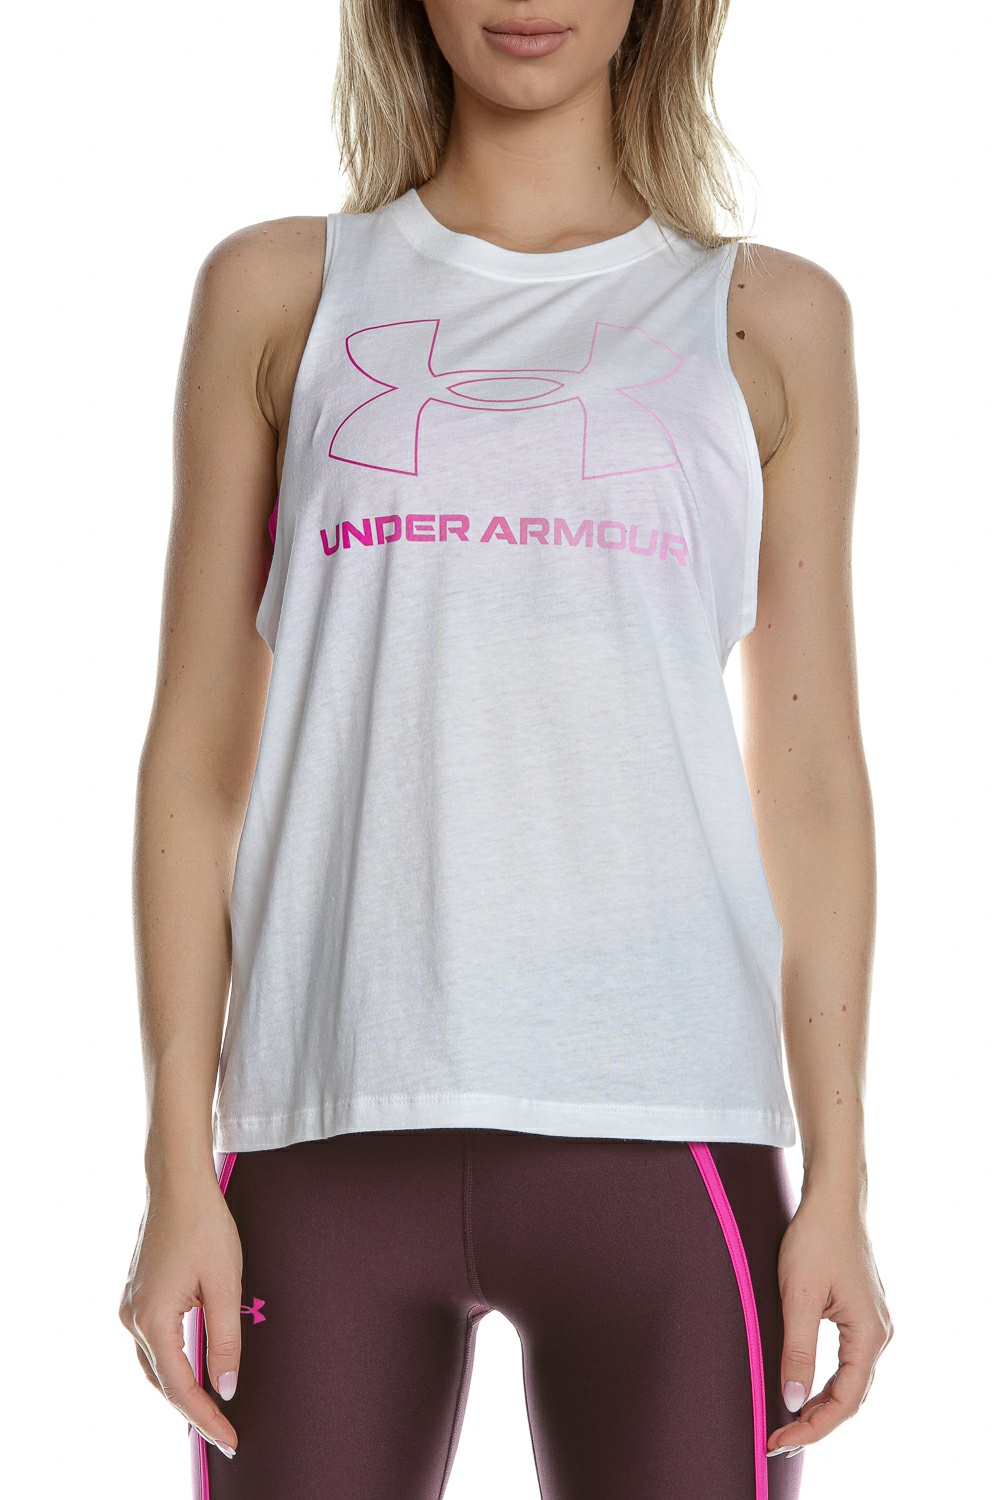 Γυναικεία/Ρούχα/Αθλητικά/T-shirt-Τοπ UNDER ARMOUR - Γυναικείο top UNDER ARMOUR Live Sportstyle Graphic Tank λευκή